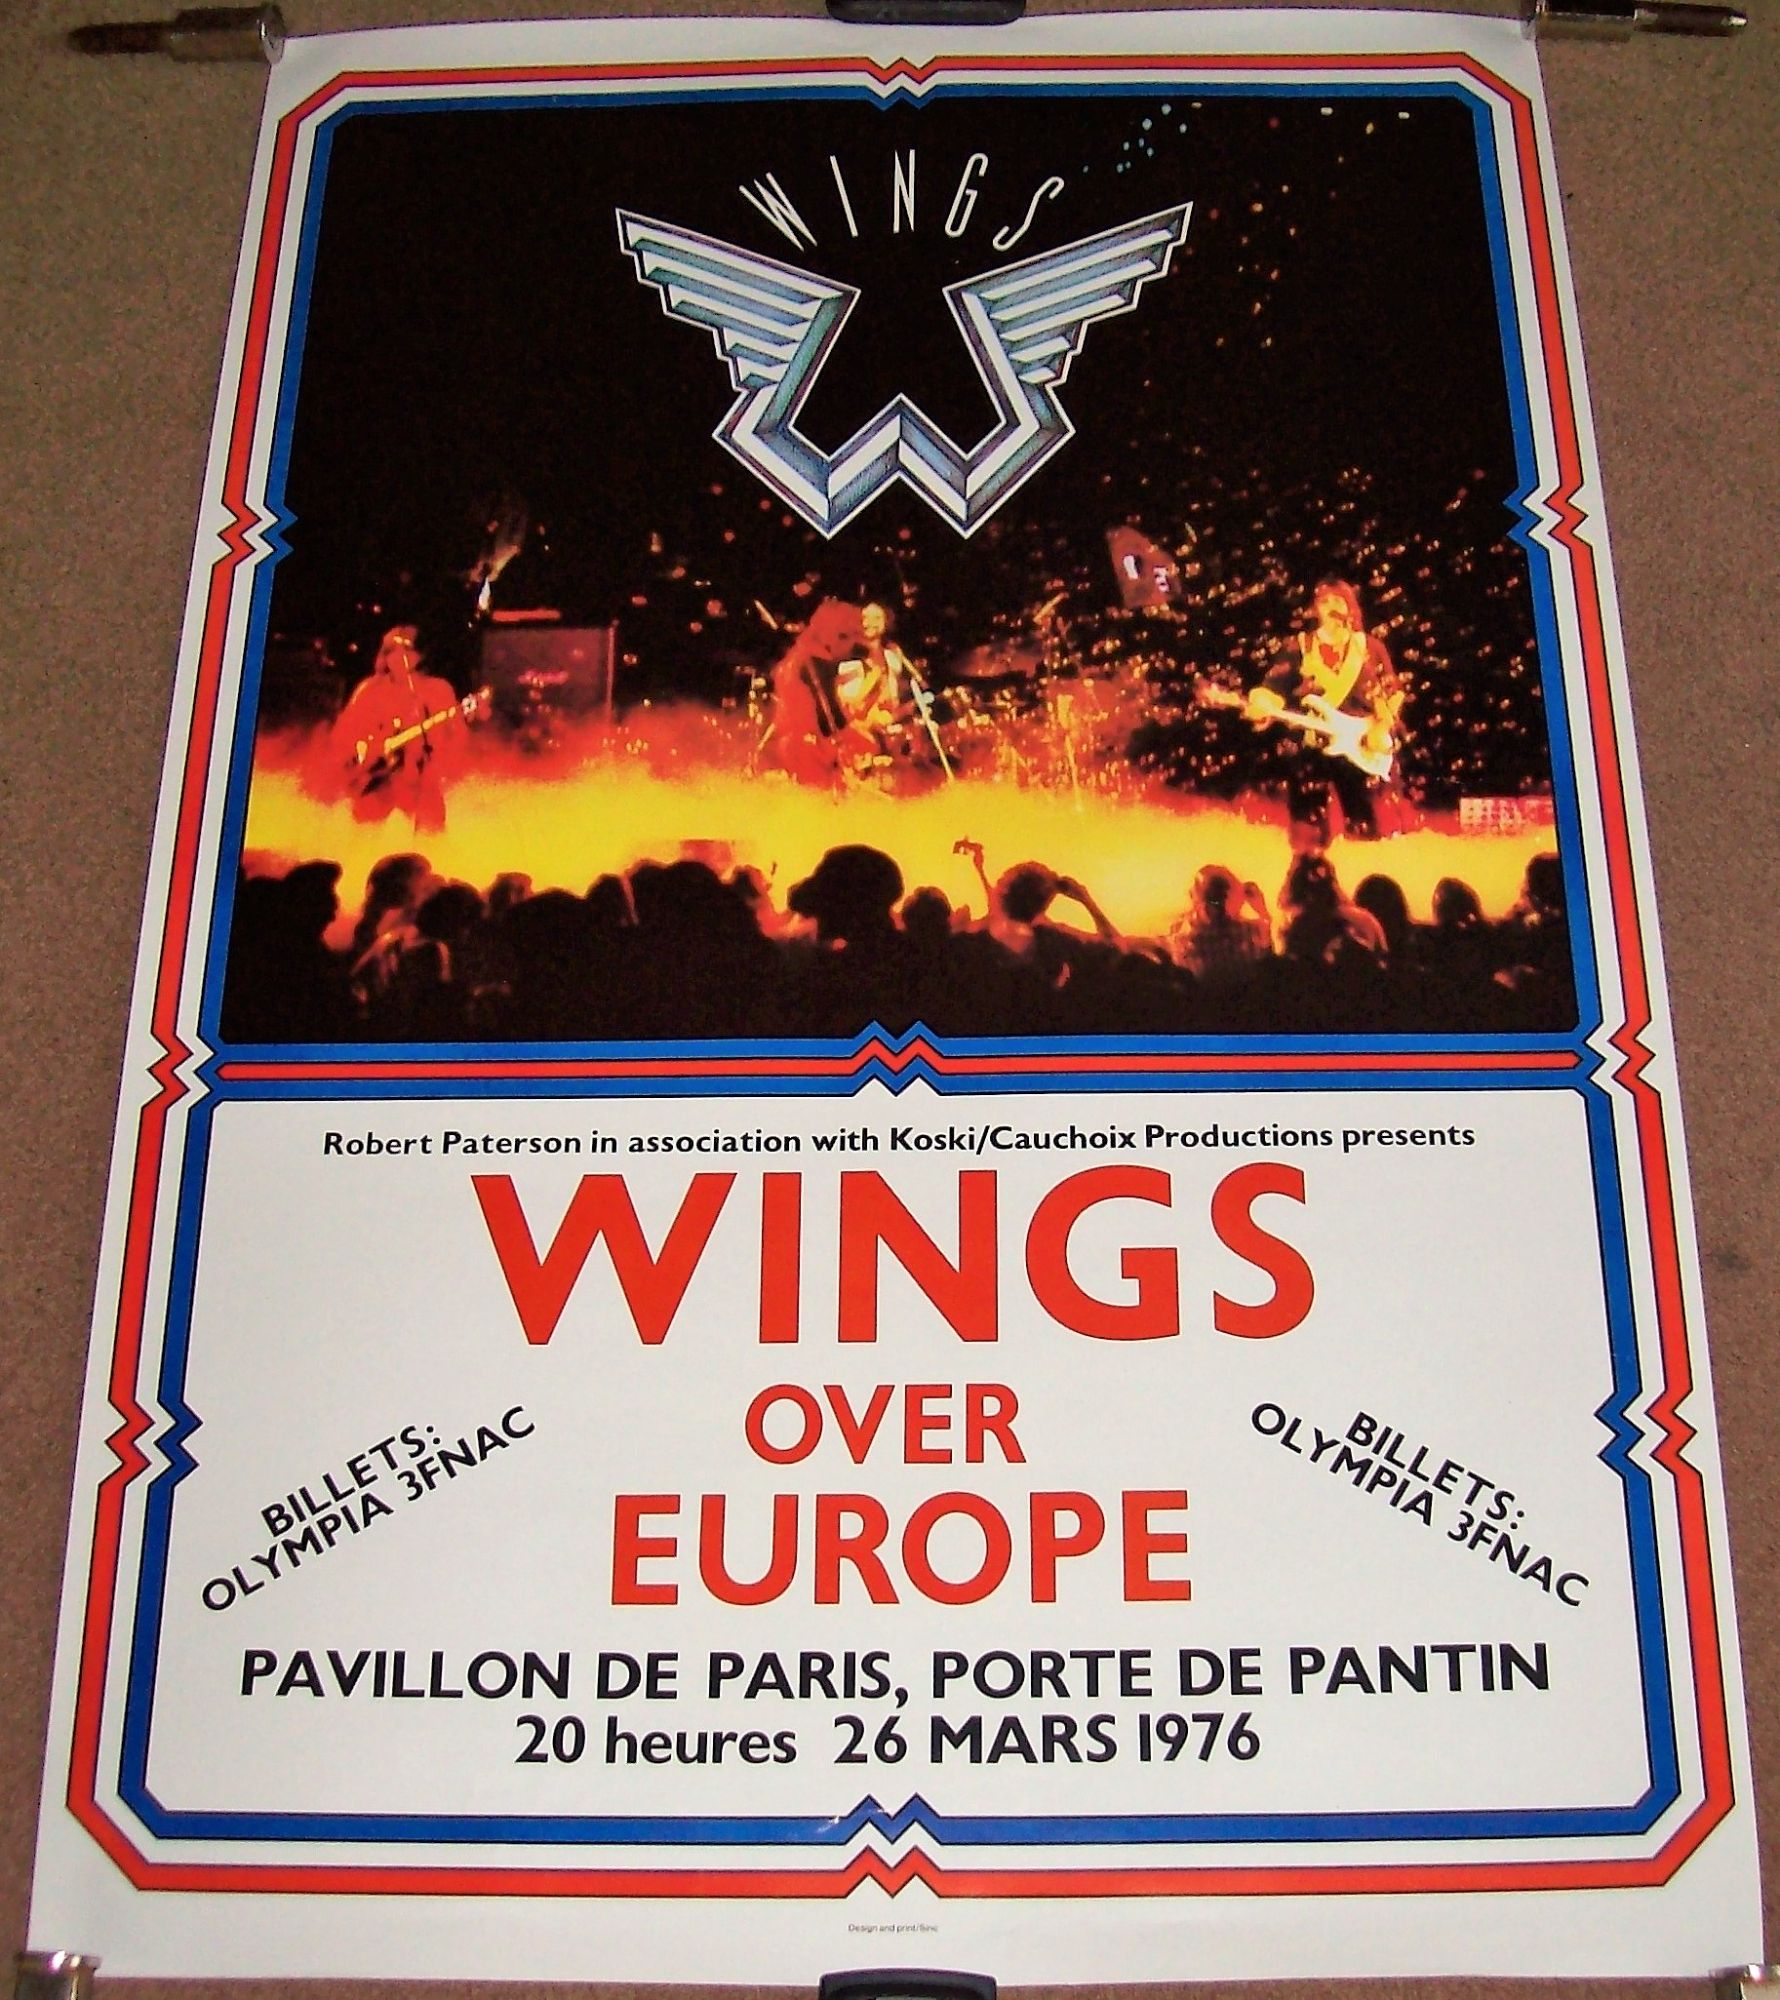 THE BEATLES WINGS CONCERT POSTER 26th MARCH 1976 PAVILLON DE PARIS FRANCE 